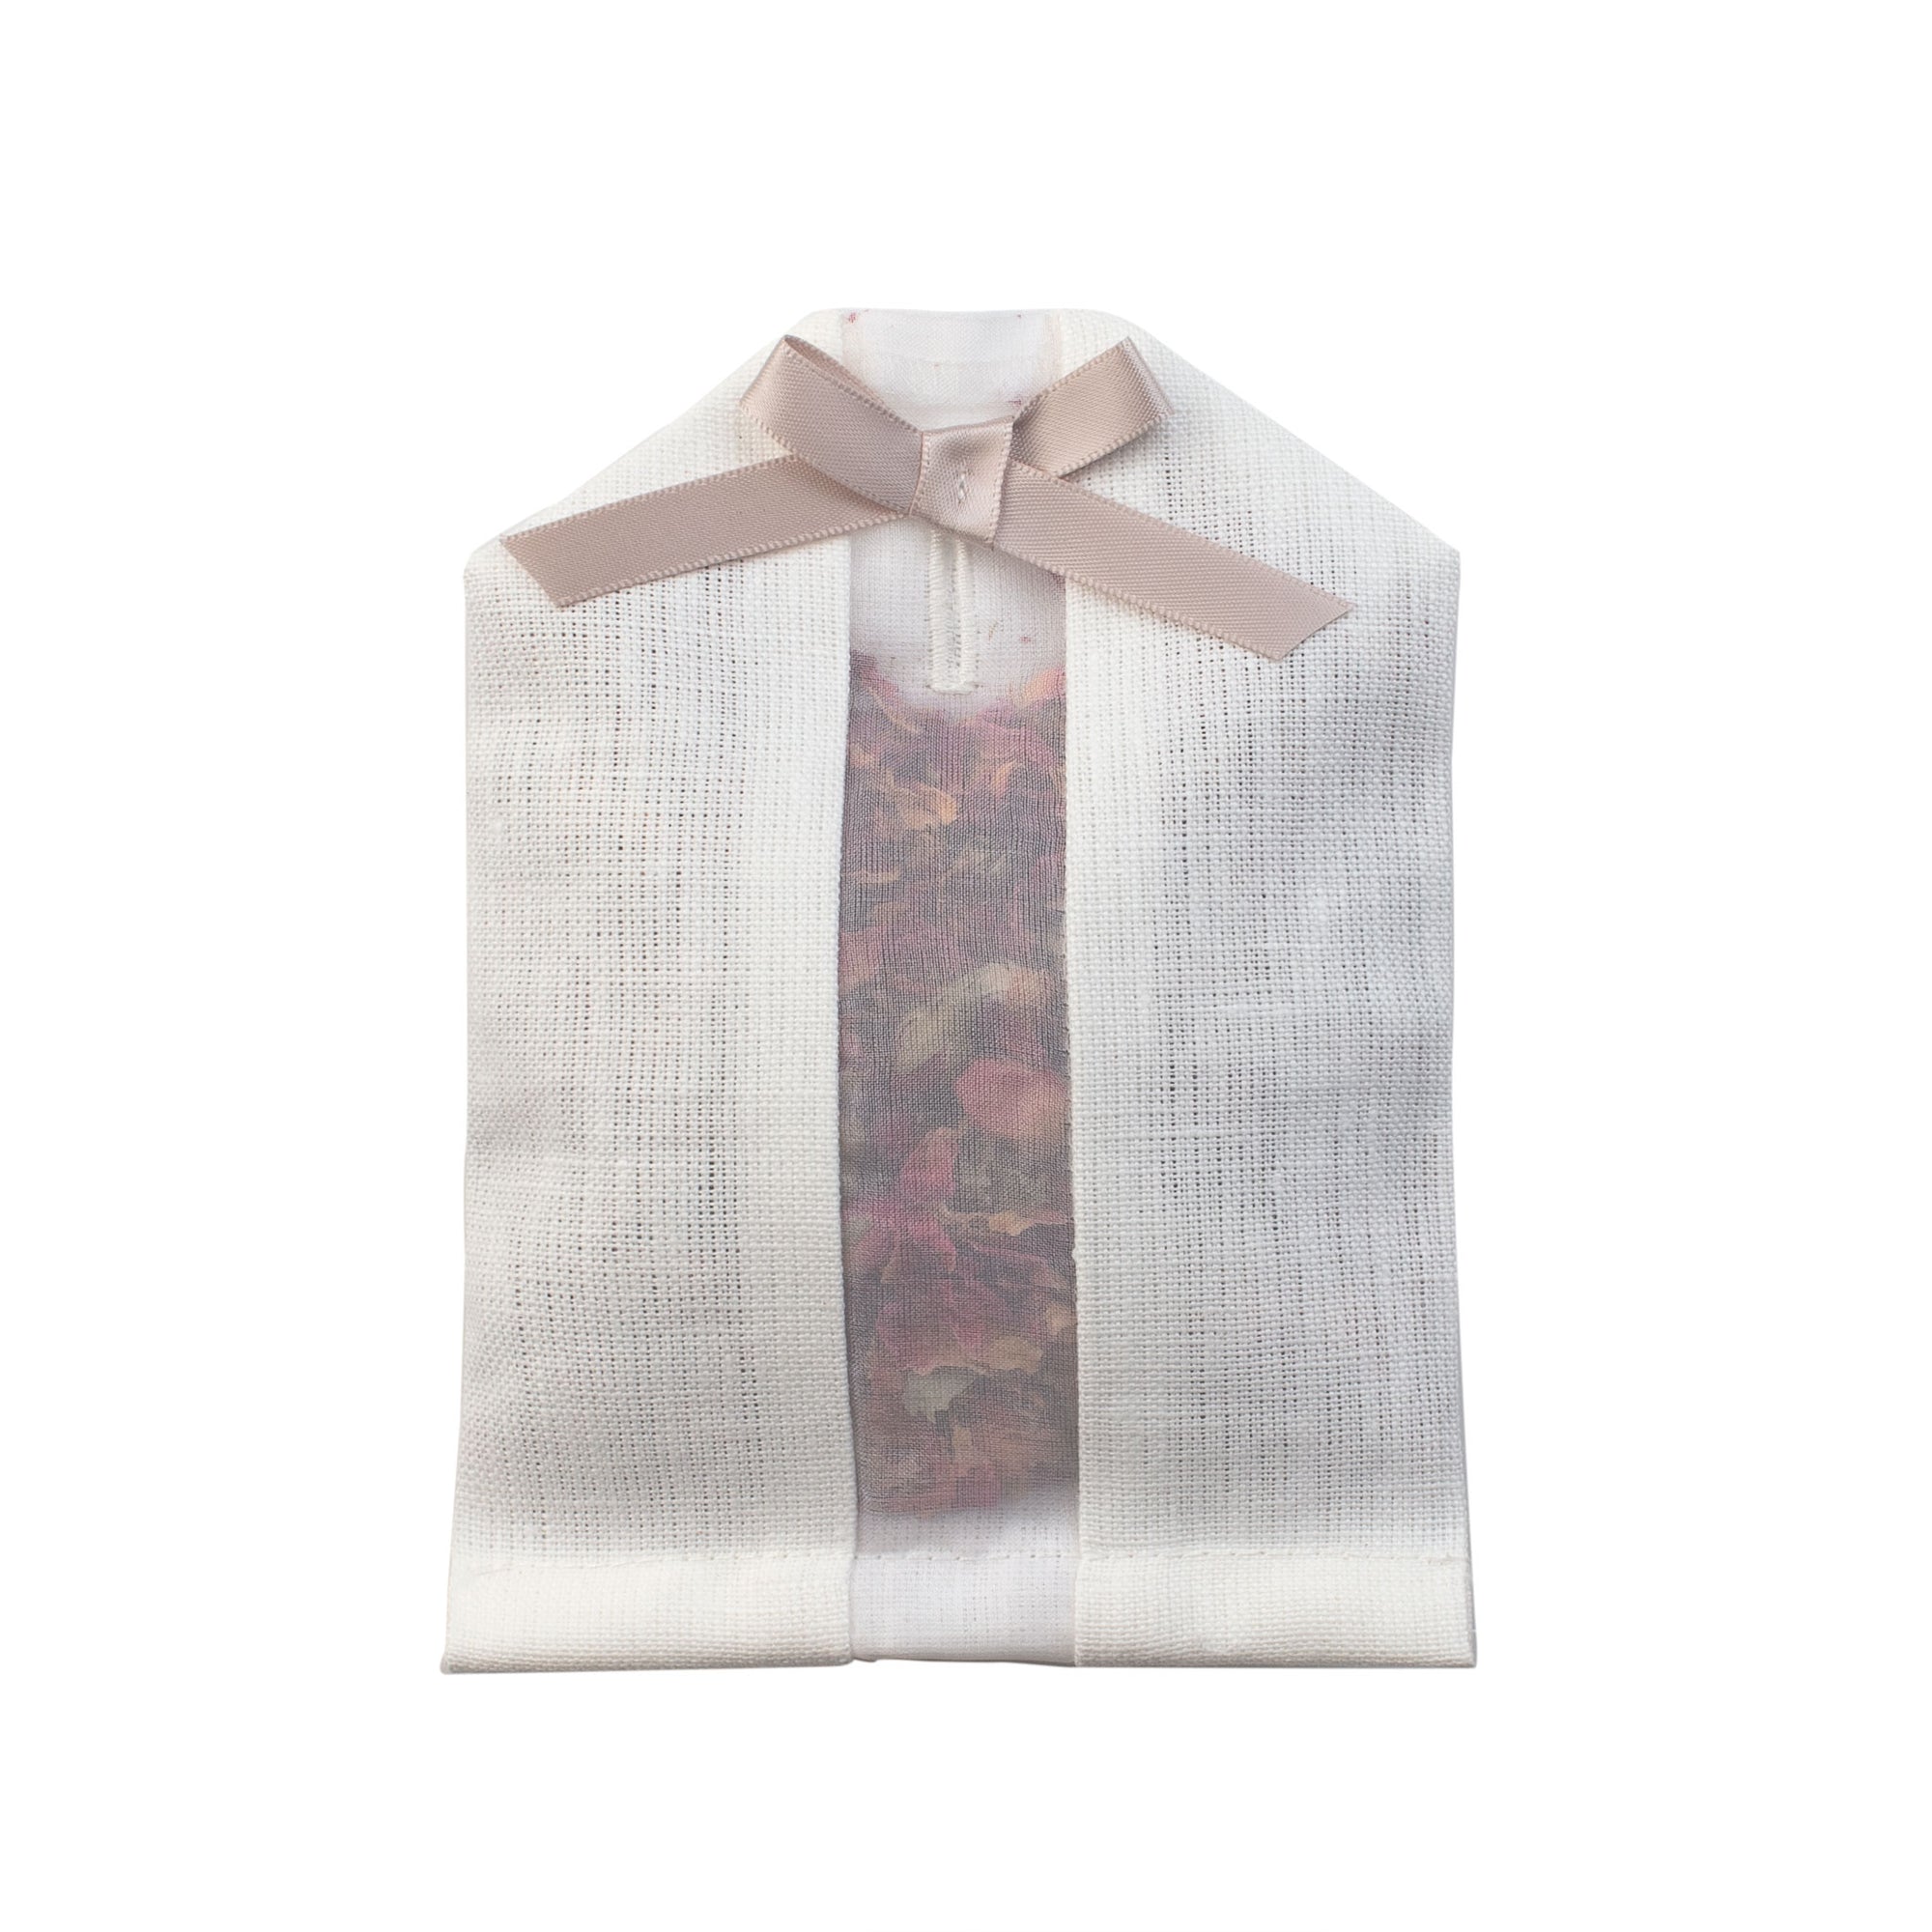 Dried rose petals filled inside of an ivory linen hanger sachet 